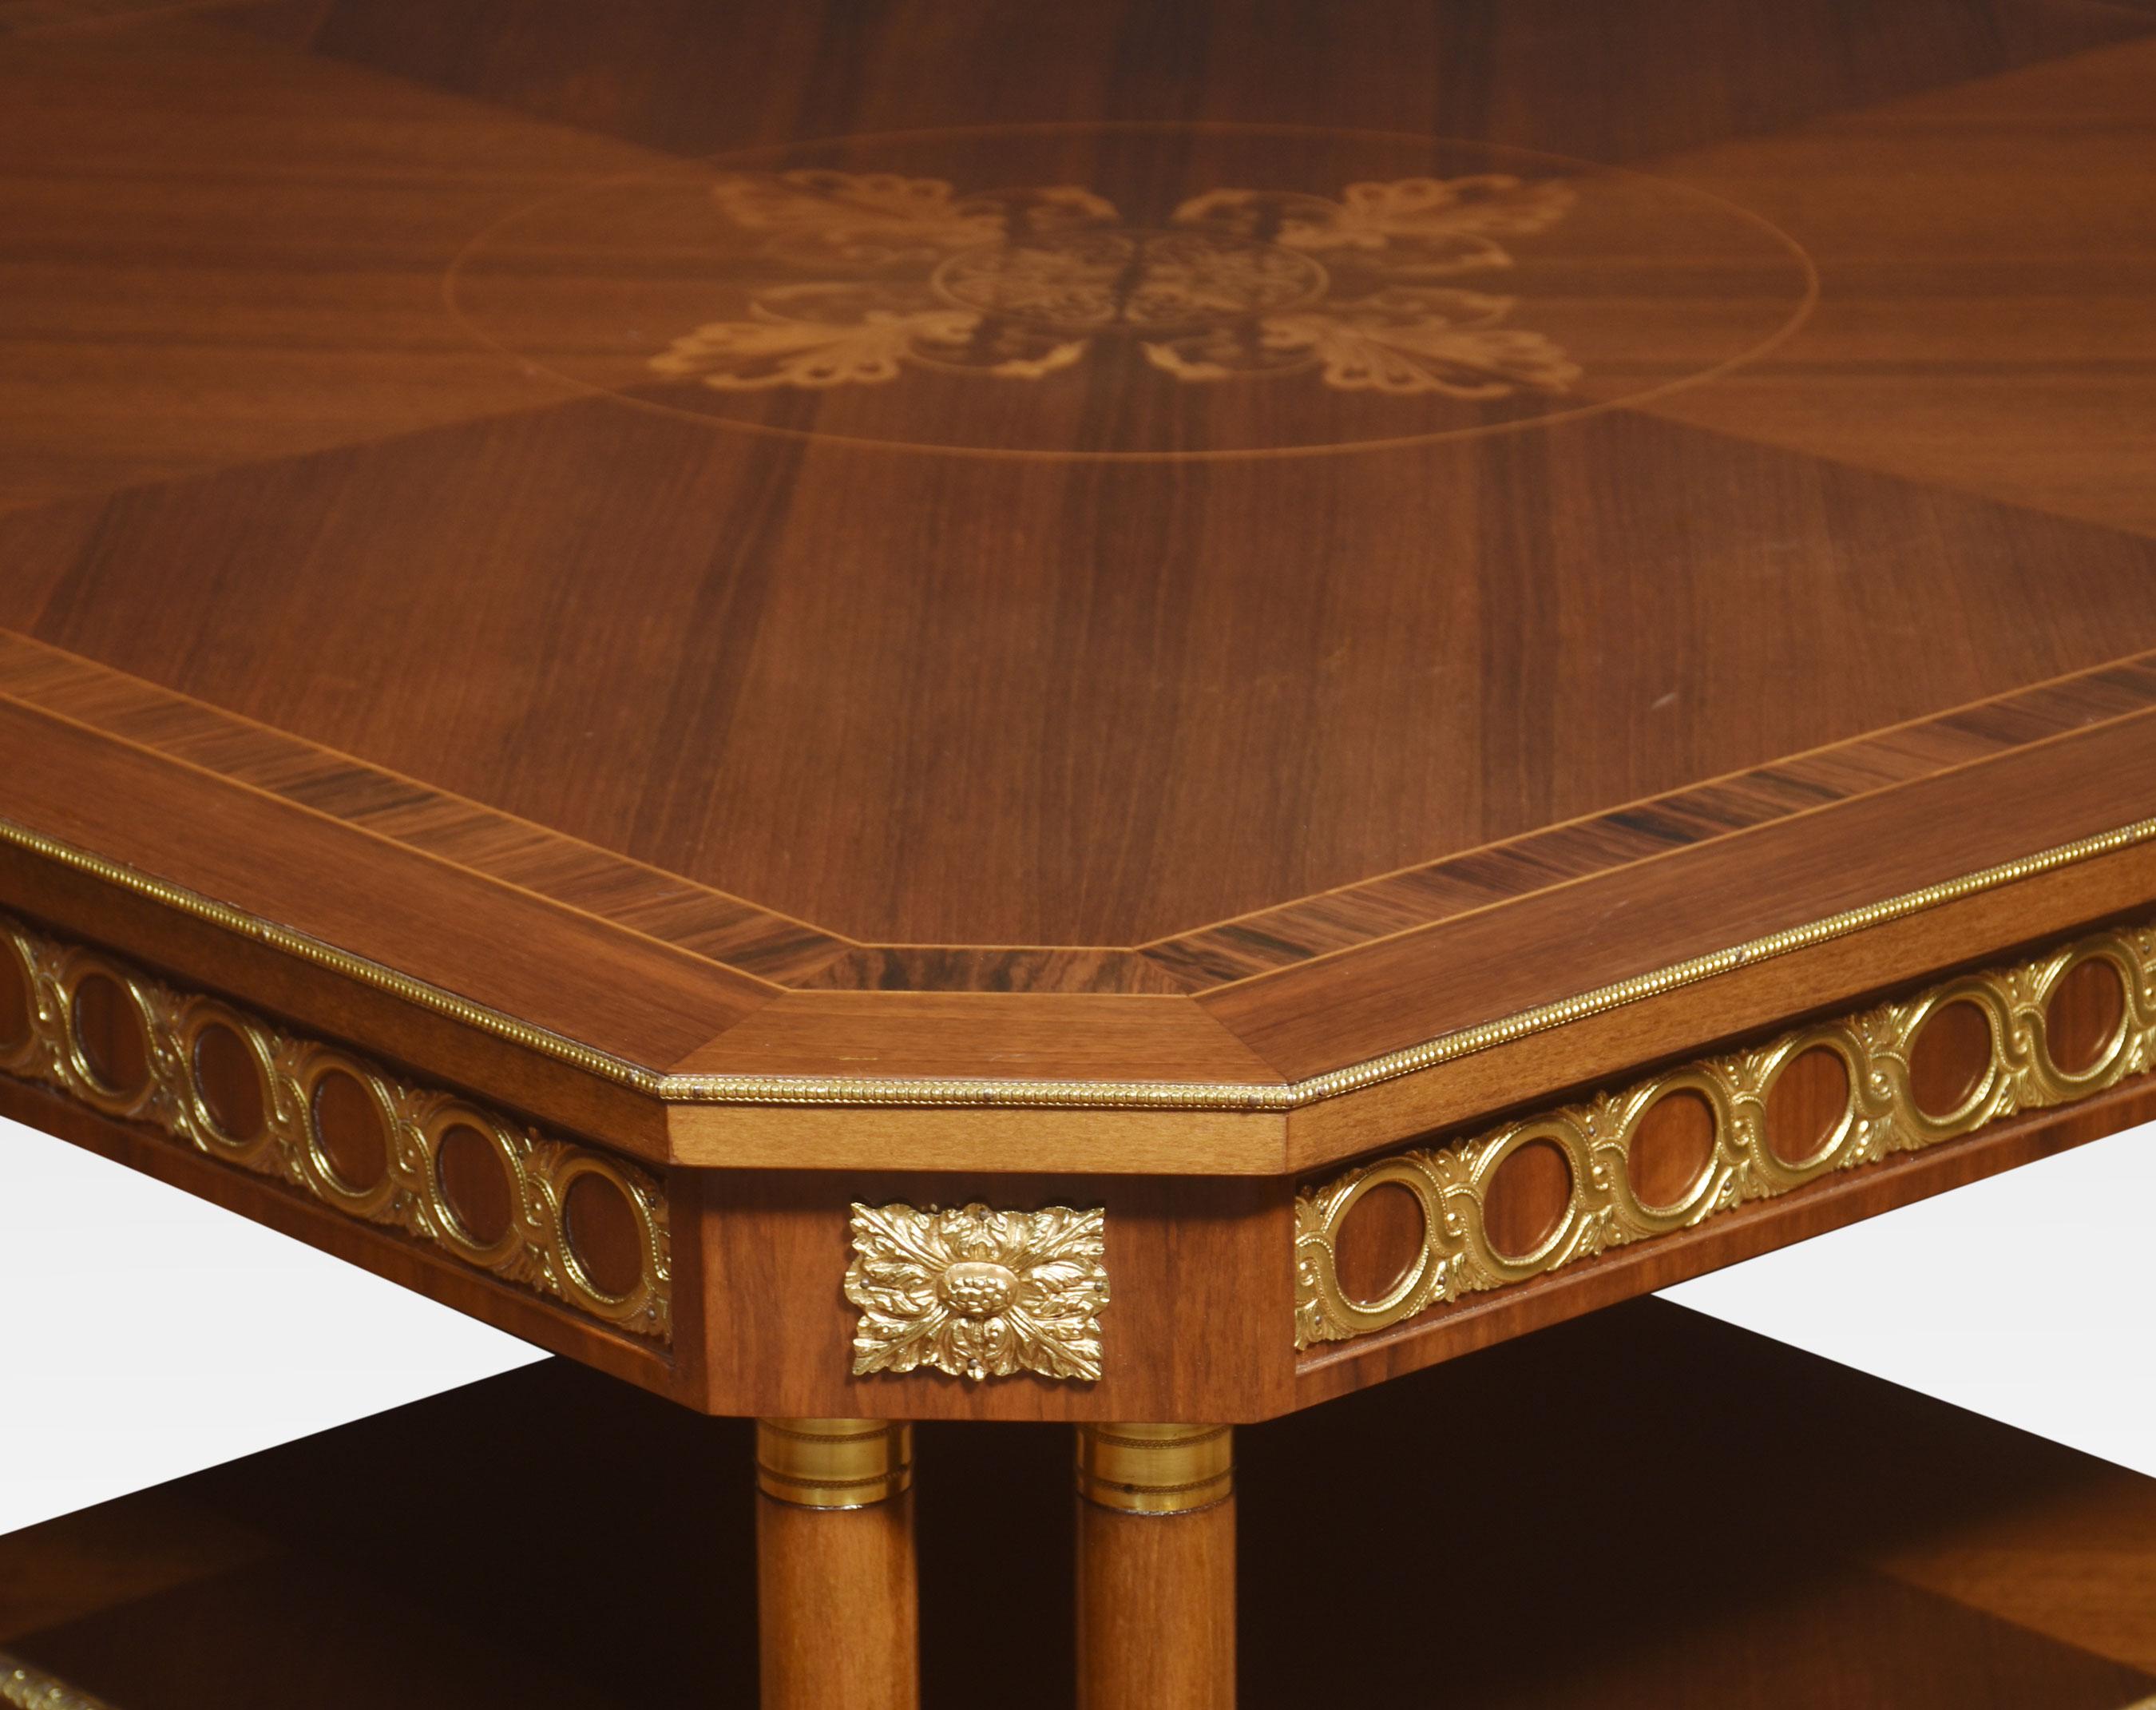 Très grande table basse de style Louis XVI, le plateau avec une marqueterie centrale entourée d'un décor d'anthemion, avec des coins inclinés. Le gel est décoré de montures en métal doré. Le tout repose sur des pieds en forme de colonne et sur une